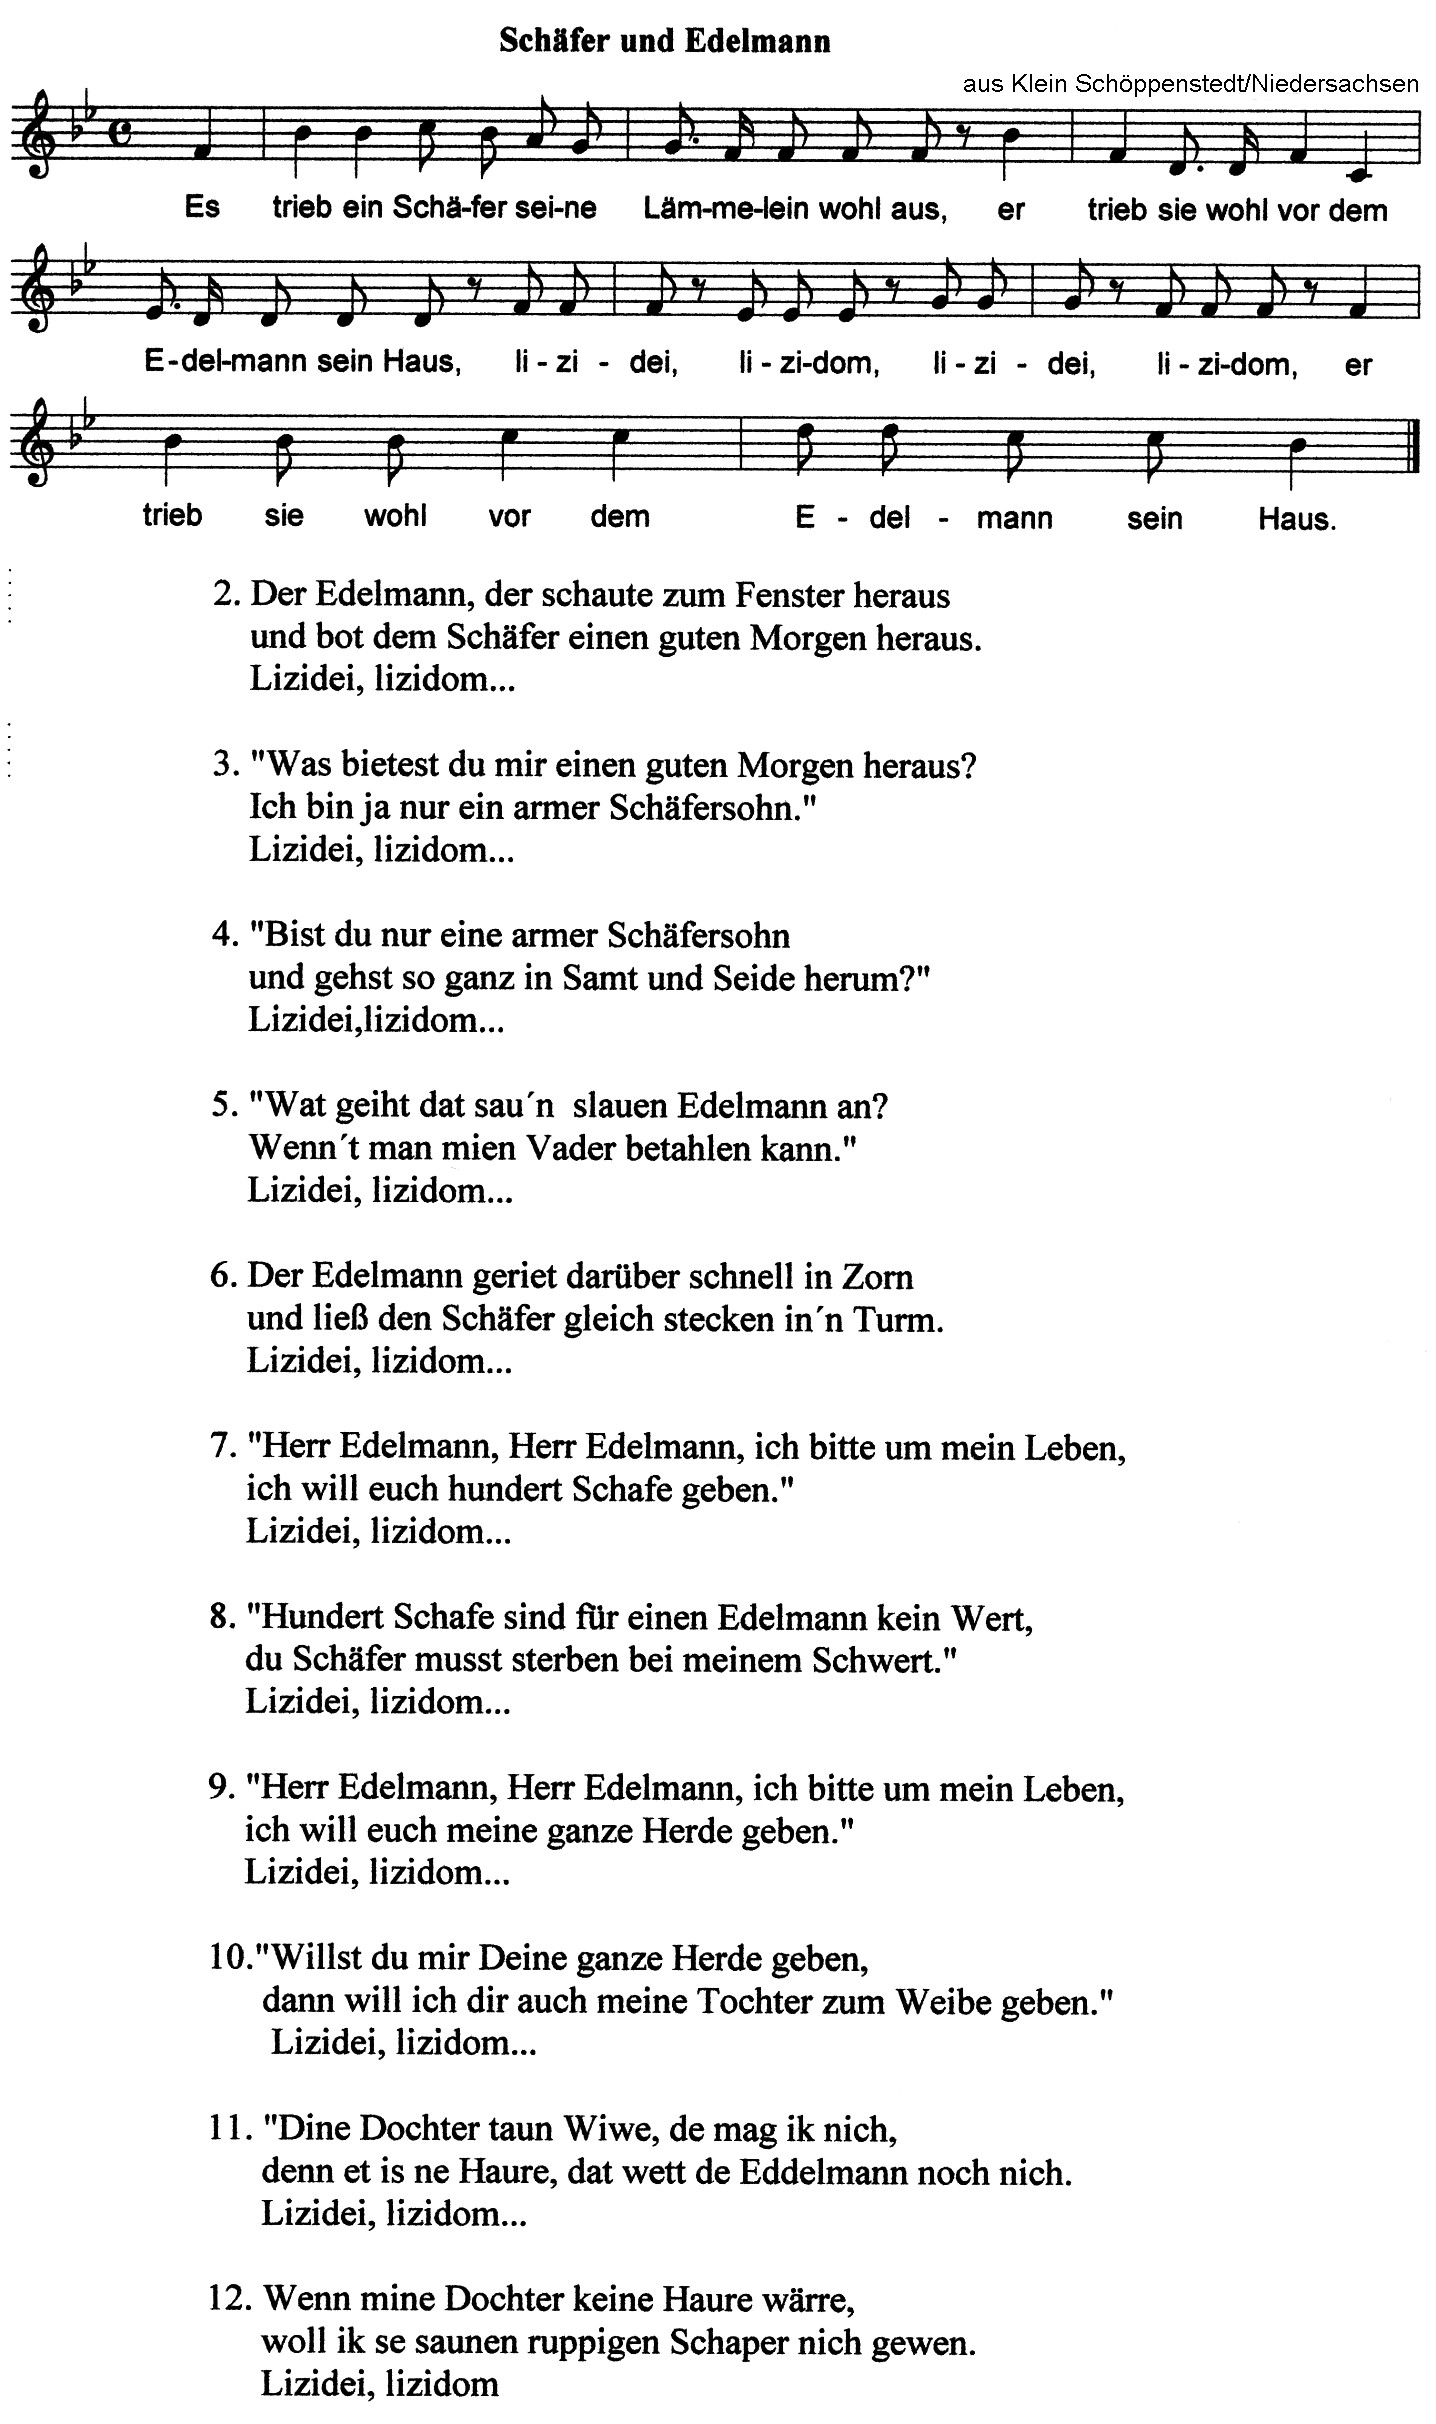 Abb. 1: Das Lied vom Schäfer und Edelmann. Archiv L. Wille